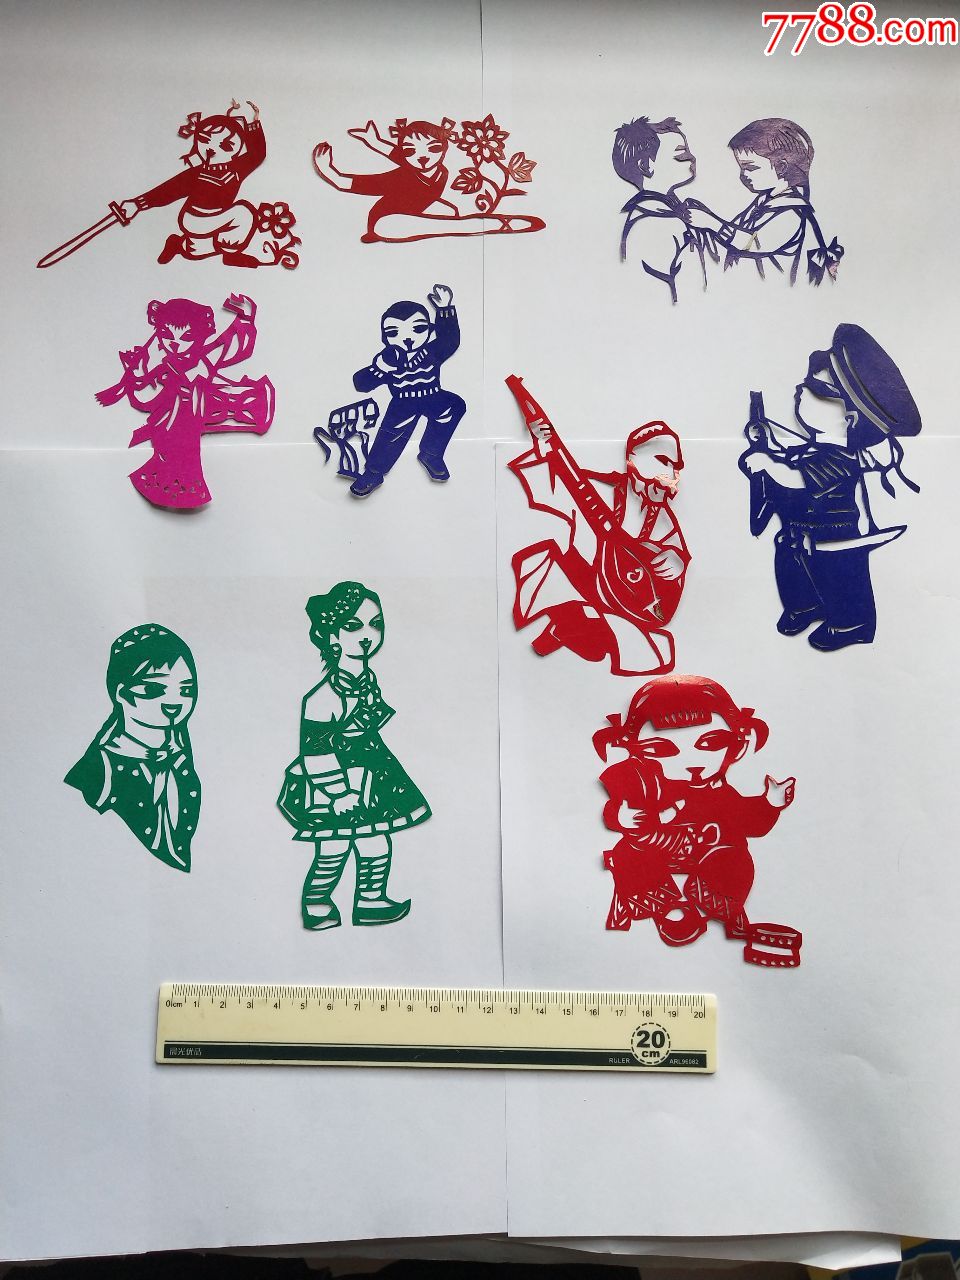 文革人物剪纸(1):剑术,少数民族,歌舞,少年,海军等形象